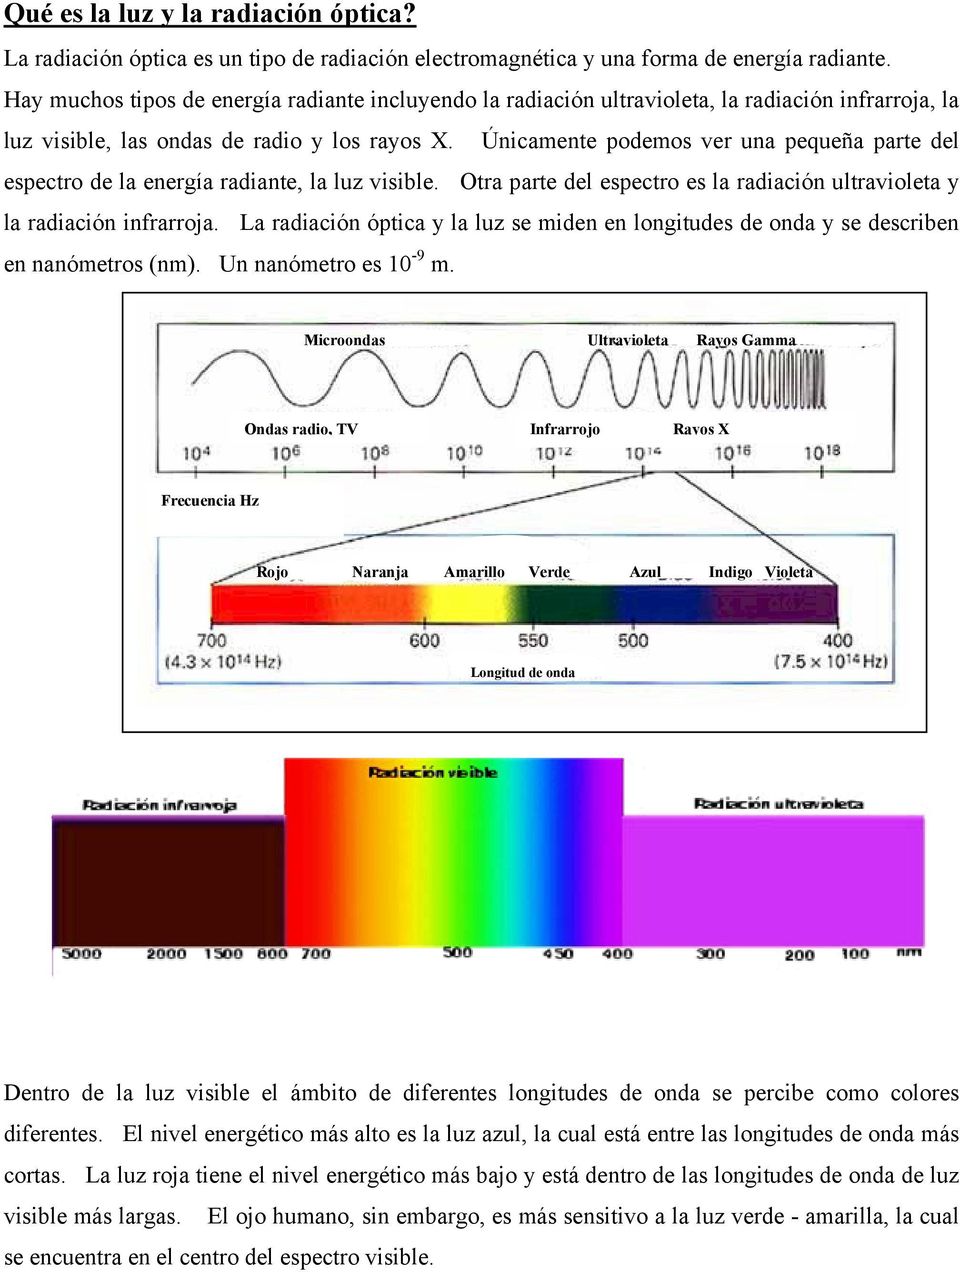 Únicamente podemos ver una pequeña parte del espectro de la energía radiante, la luz visible. Otra parte del espectro es la radiación ultravioleta y la radiación infrarroja.